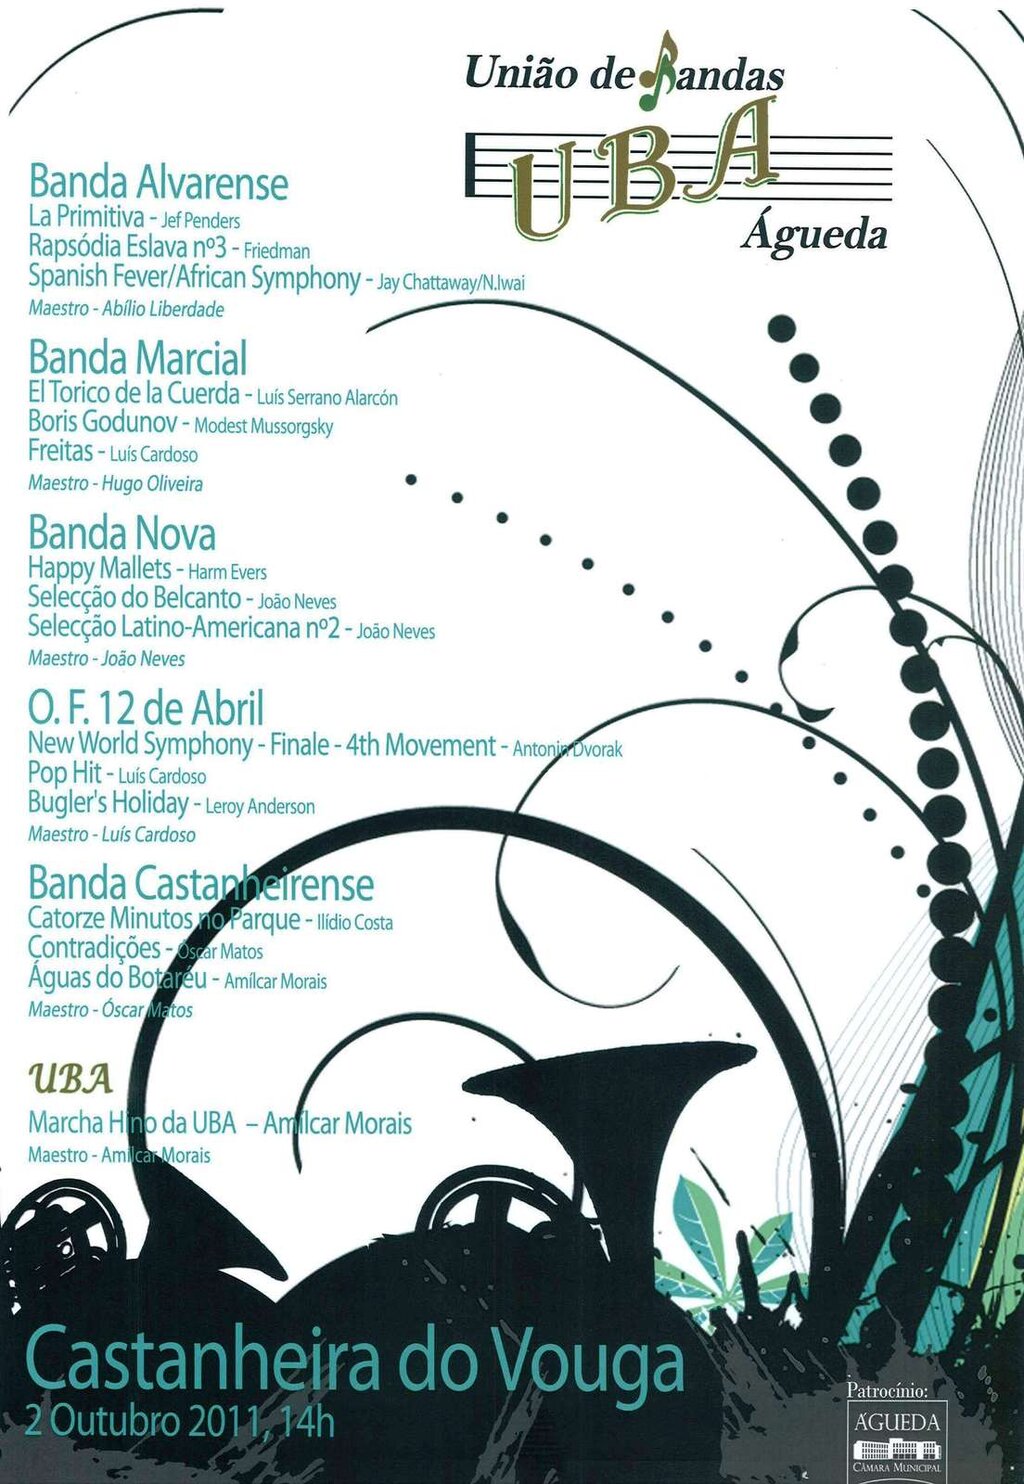 XXIII Festival da União de Bandas de Águeda (UBA) 